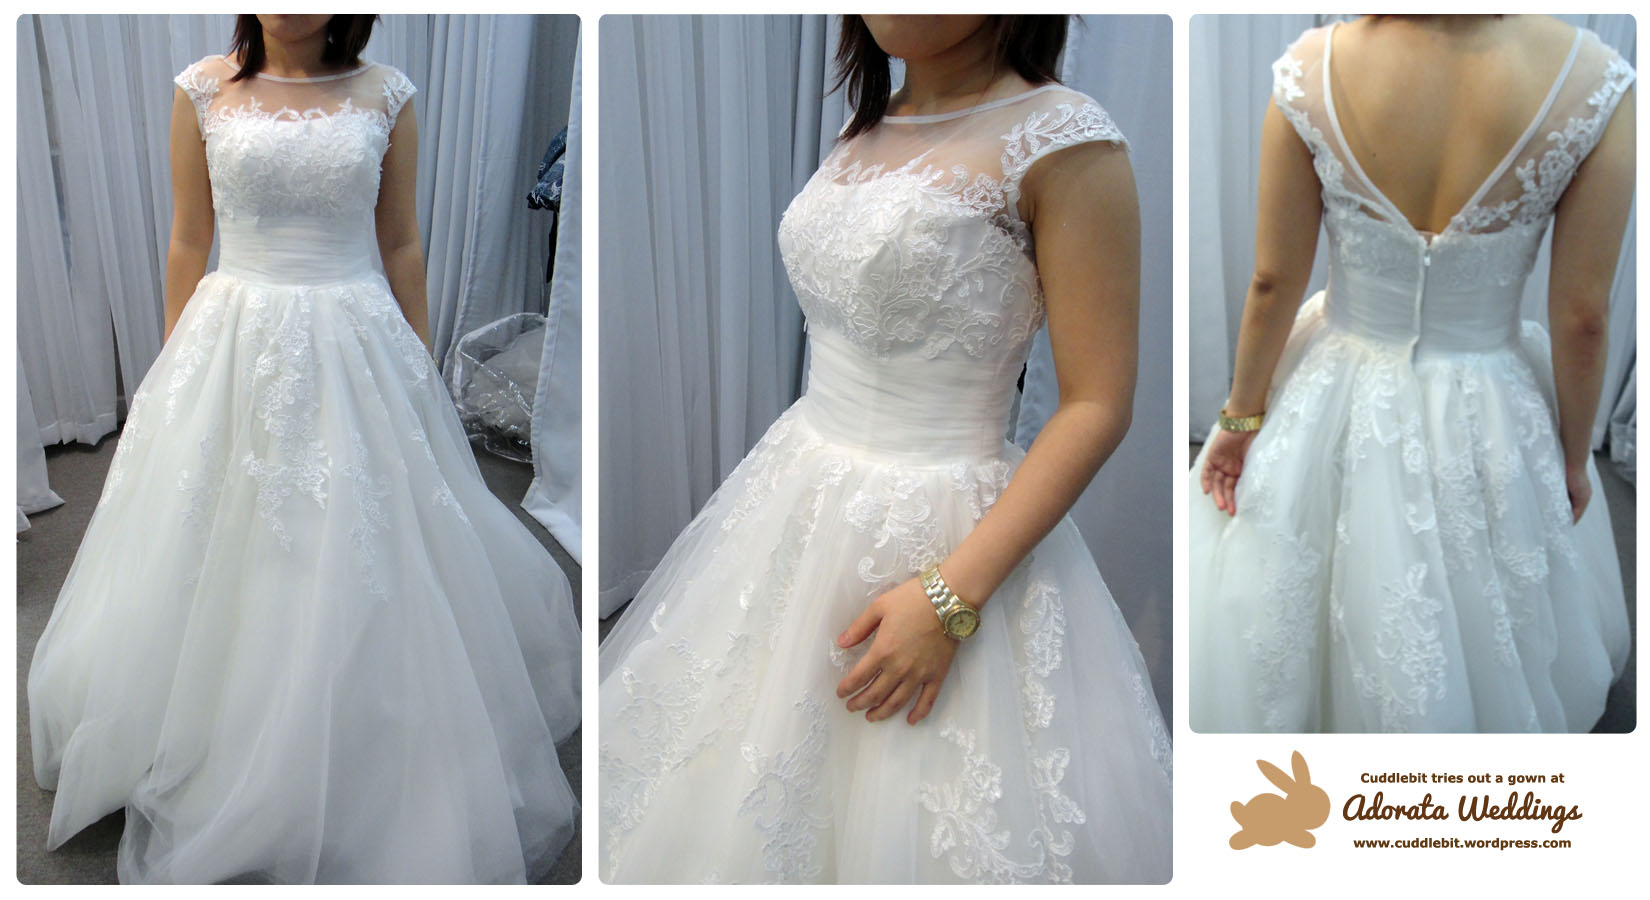 divisoria bridesmaid gowns price